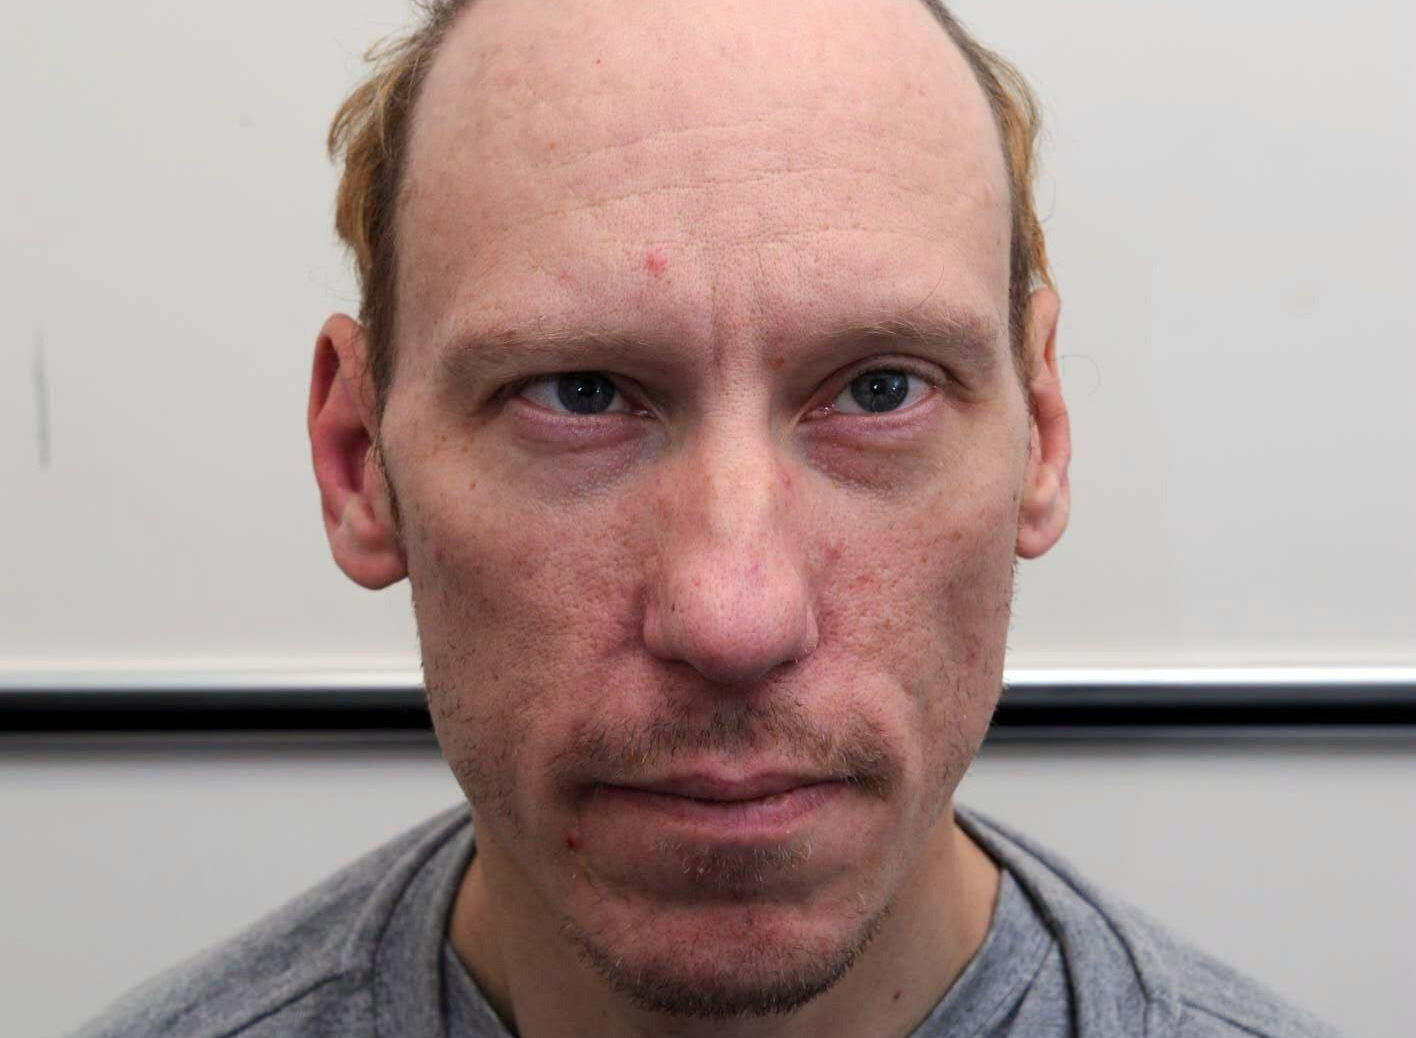 El horrible asesino Stephen Port fue condenado a cadena perpetua.